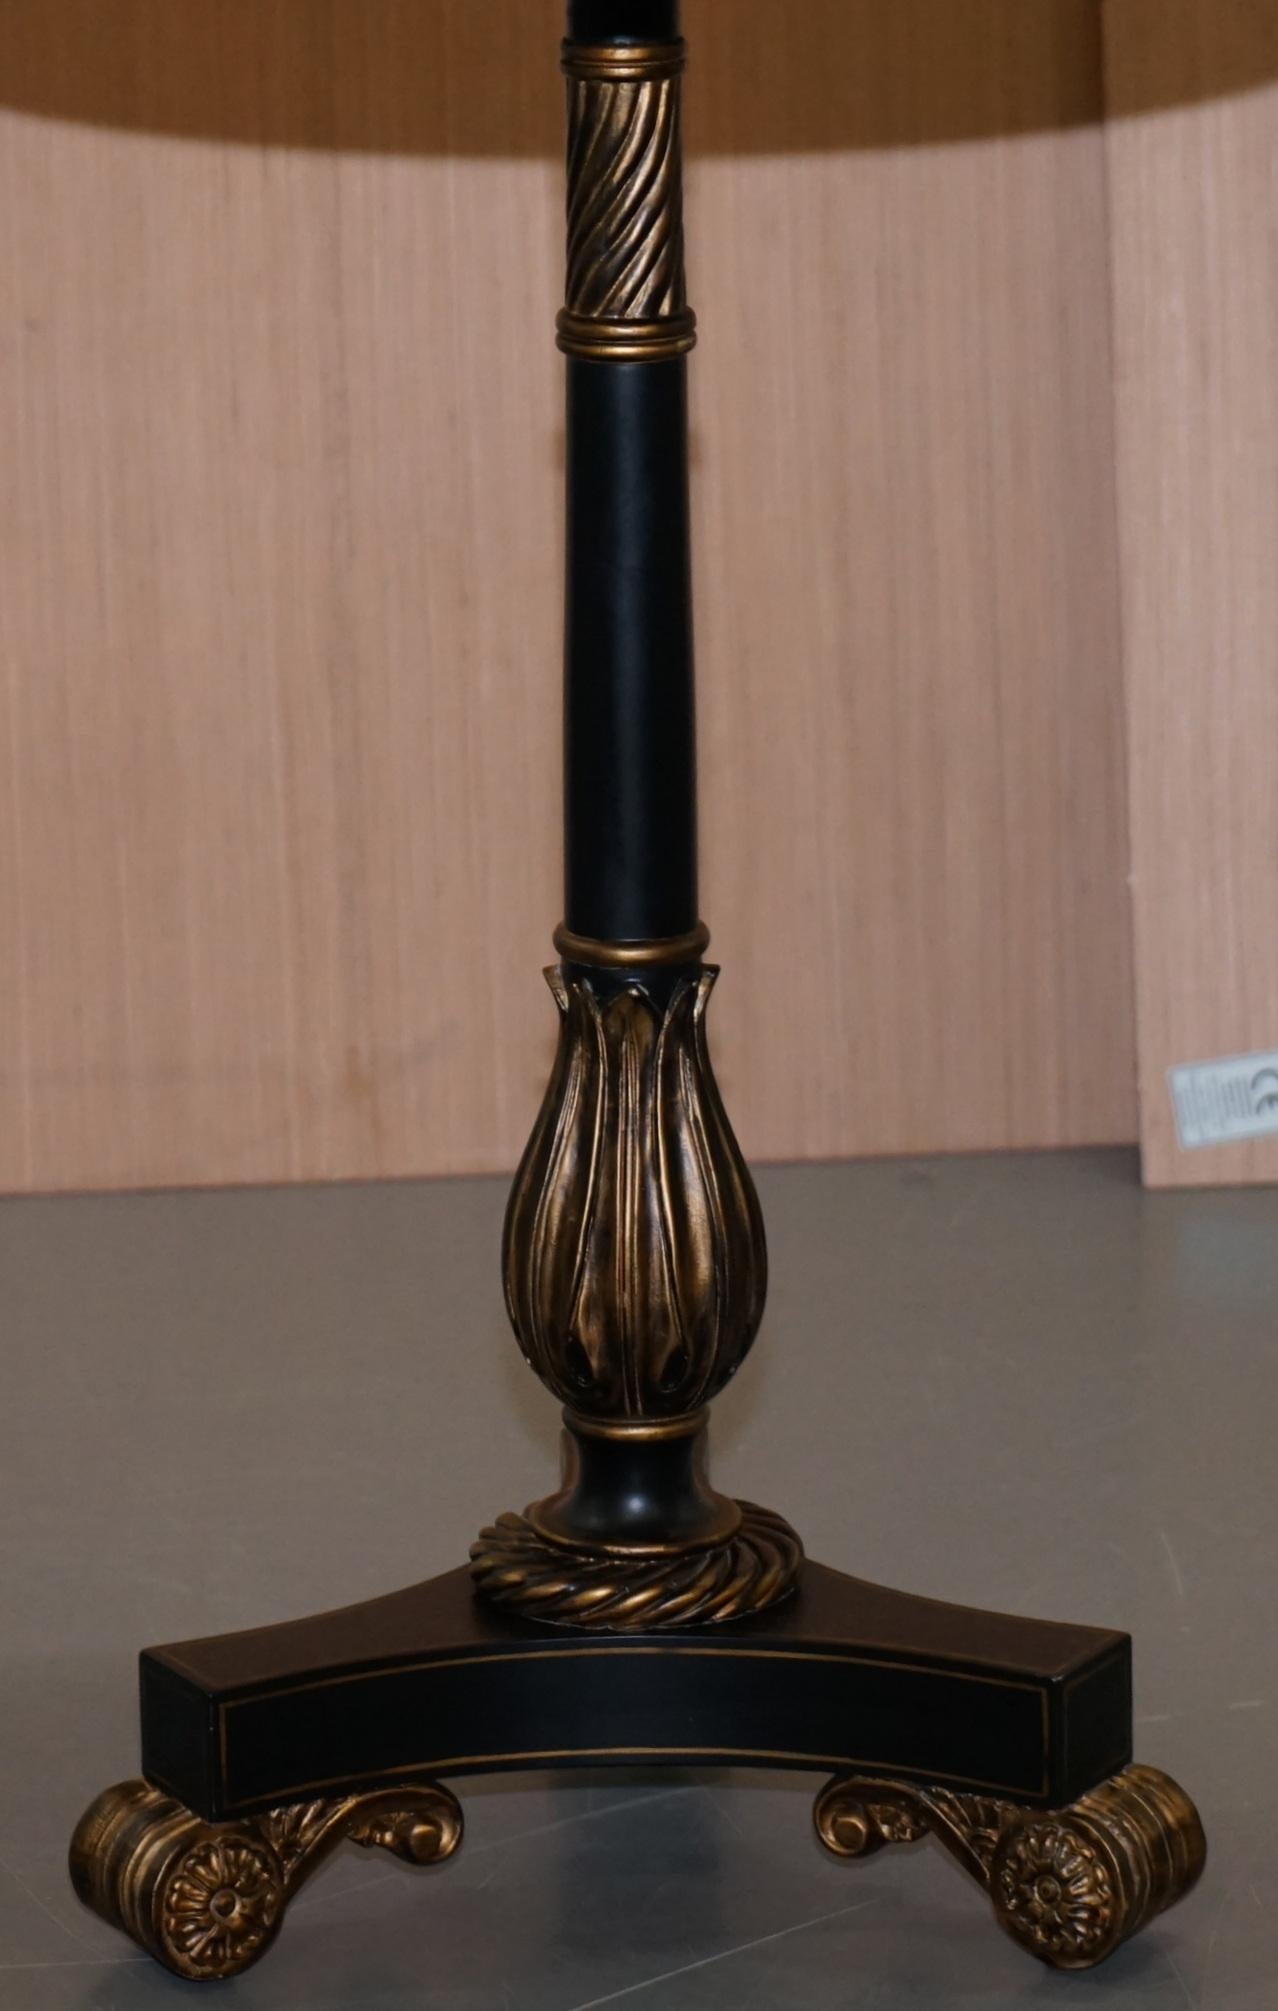 Wood Maitland-Smith Ebsonised Sunburst Side Lamp End Wine Table Stunning Black Gold